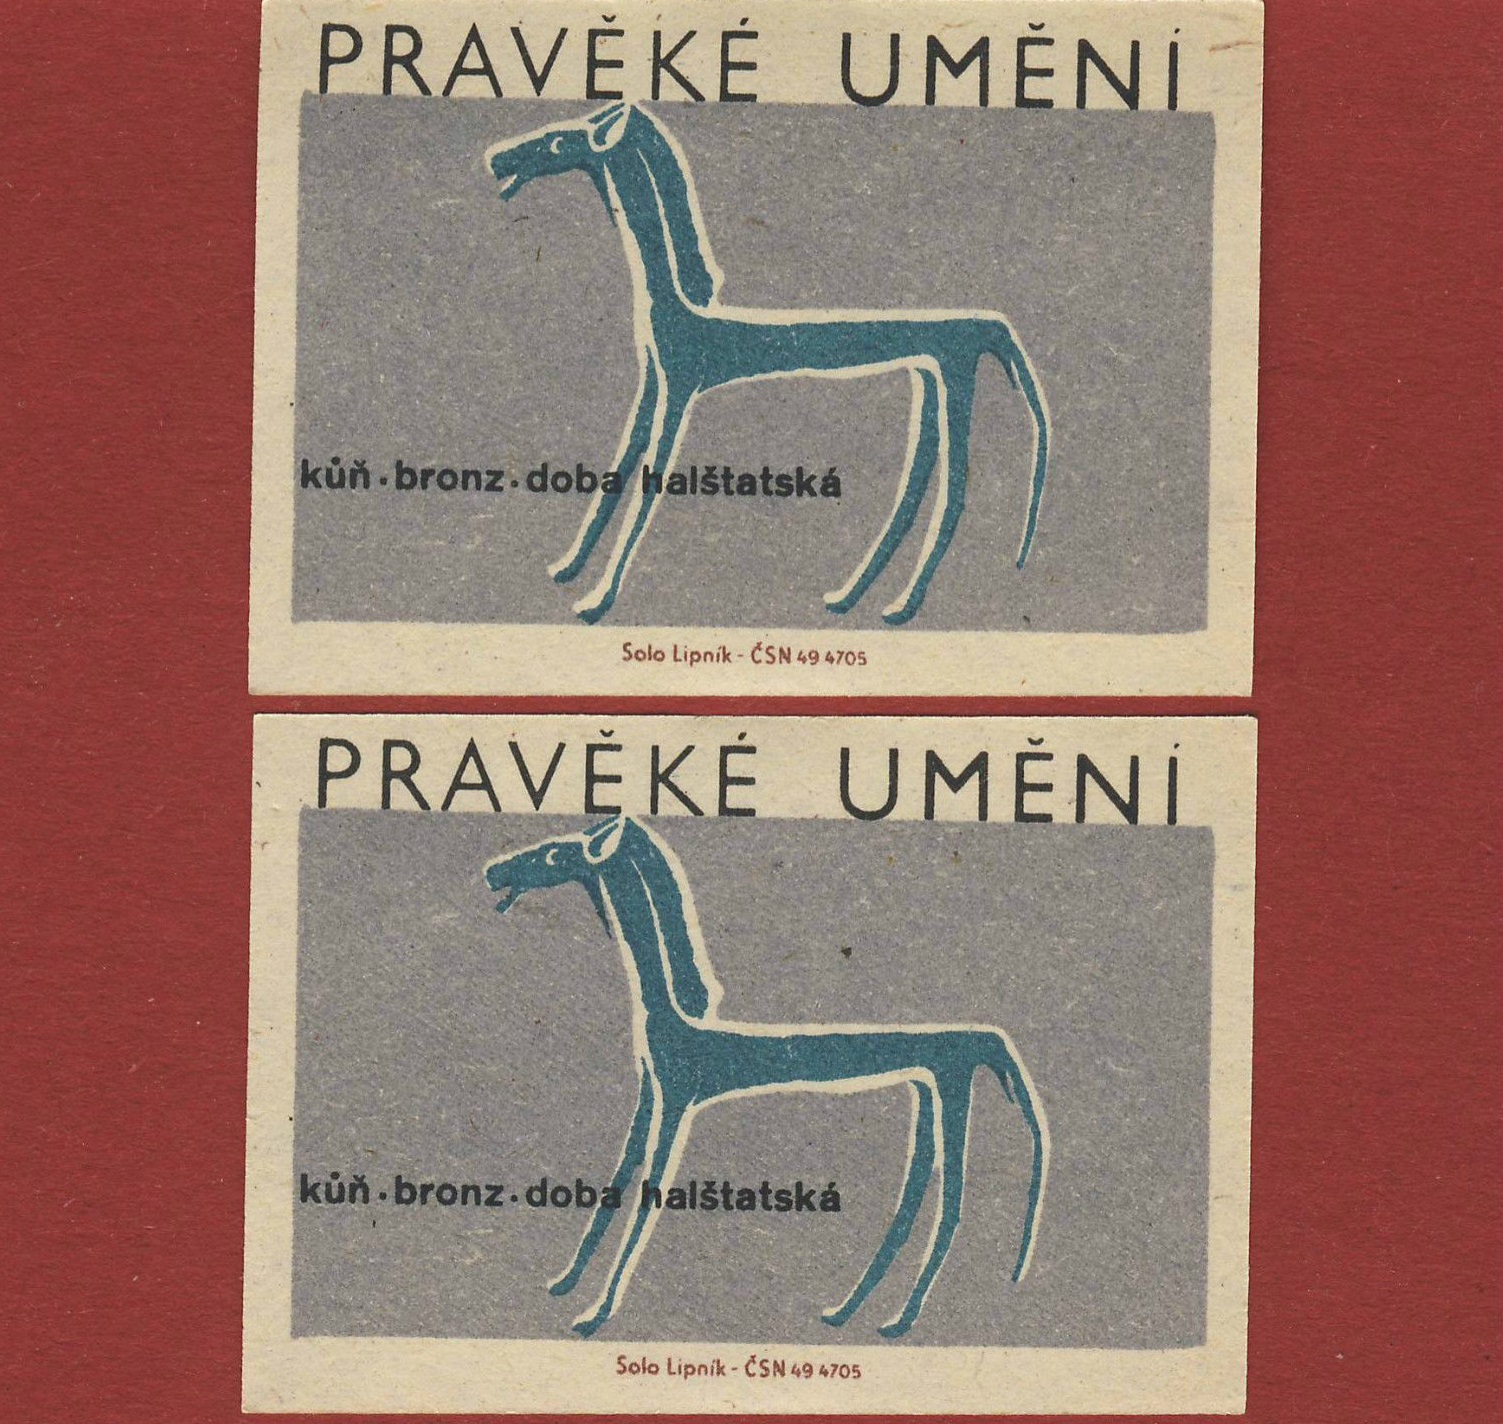 Matchbloc: Czechoslovakian matchbox art from the mid 20th century